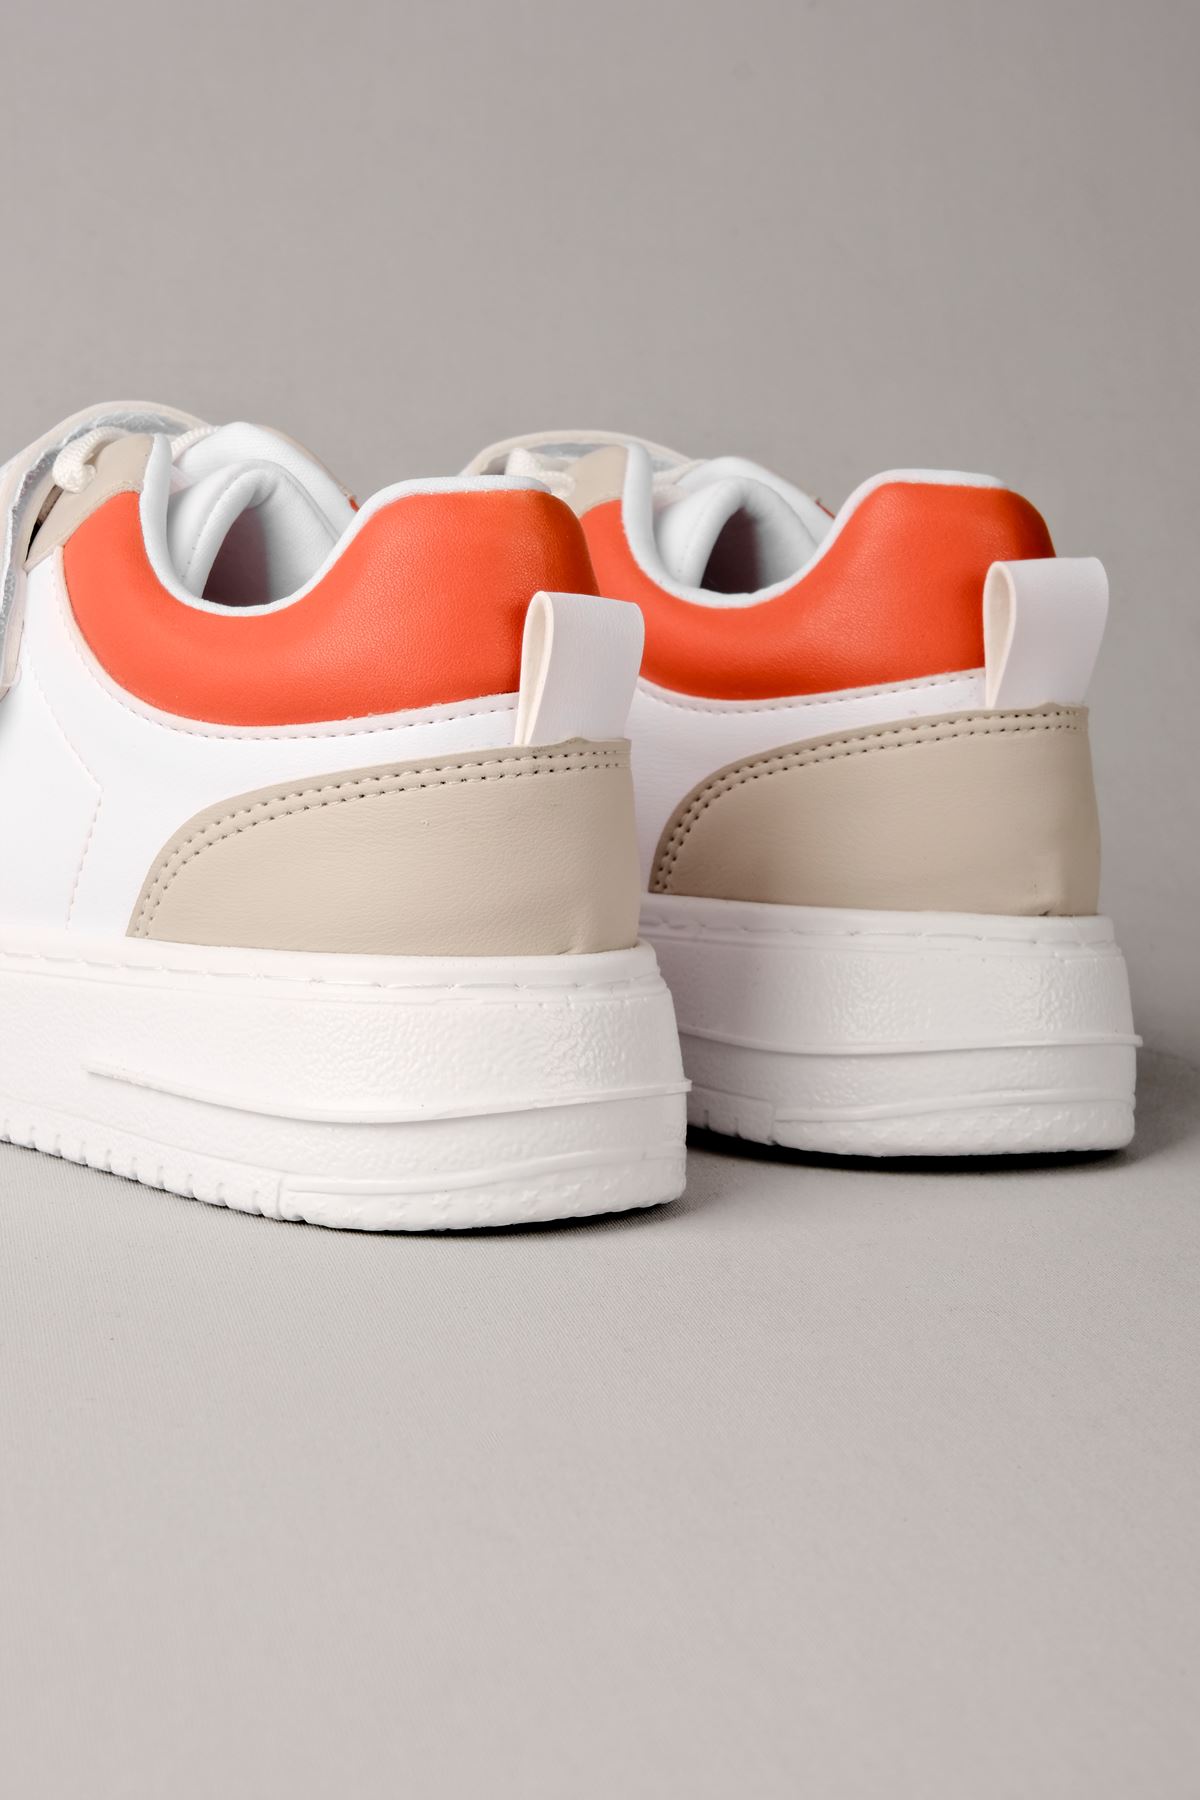 Crocus Kadın Spor Ayakkabı Bant Detaylı-turuncu